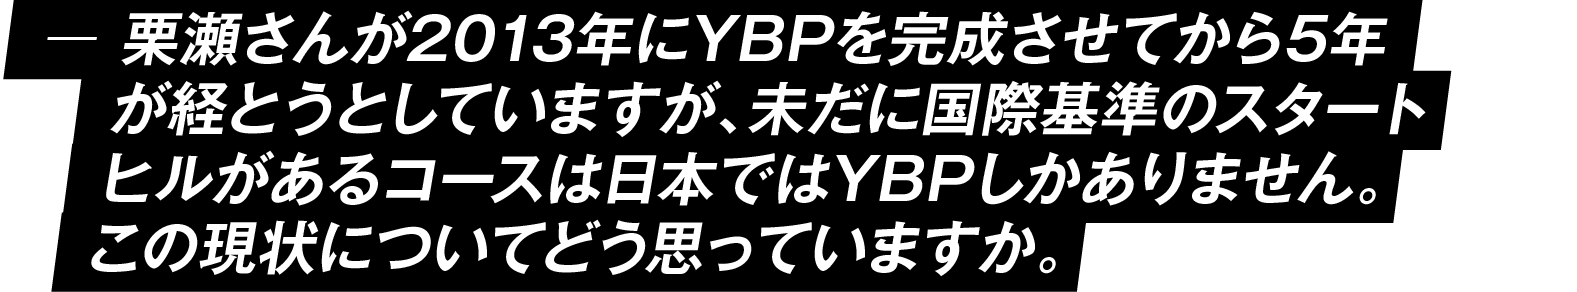 栗瀬さんが2013年にYBPを完成させてから5年が経とうとしていますが、未だに８メートルスタートヒルがあるコースは日本ではYBPしかありません。この現状についてどう思っていますか。